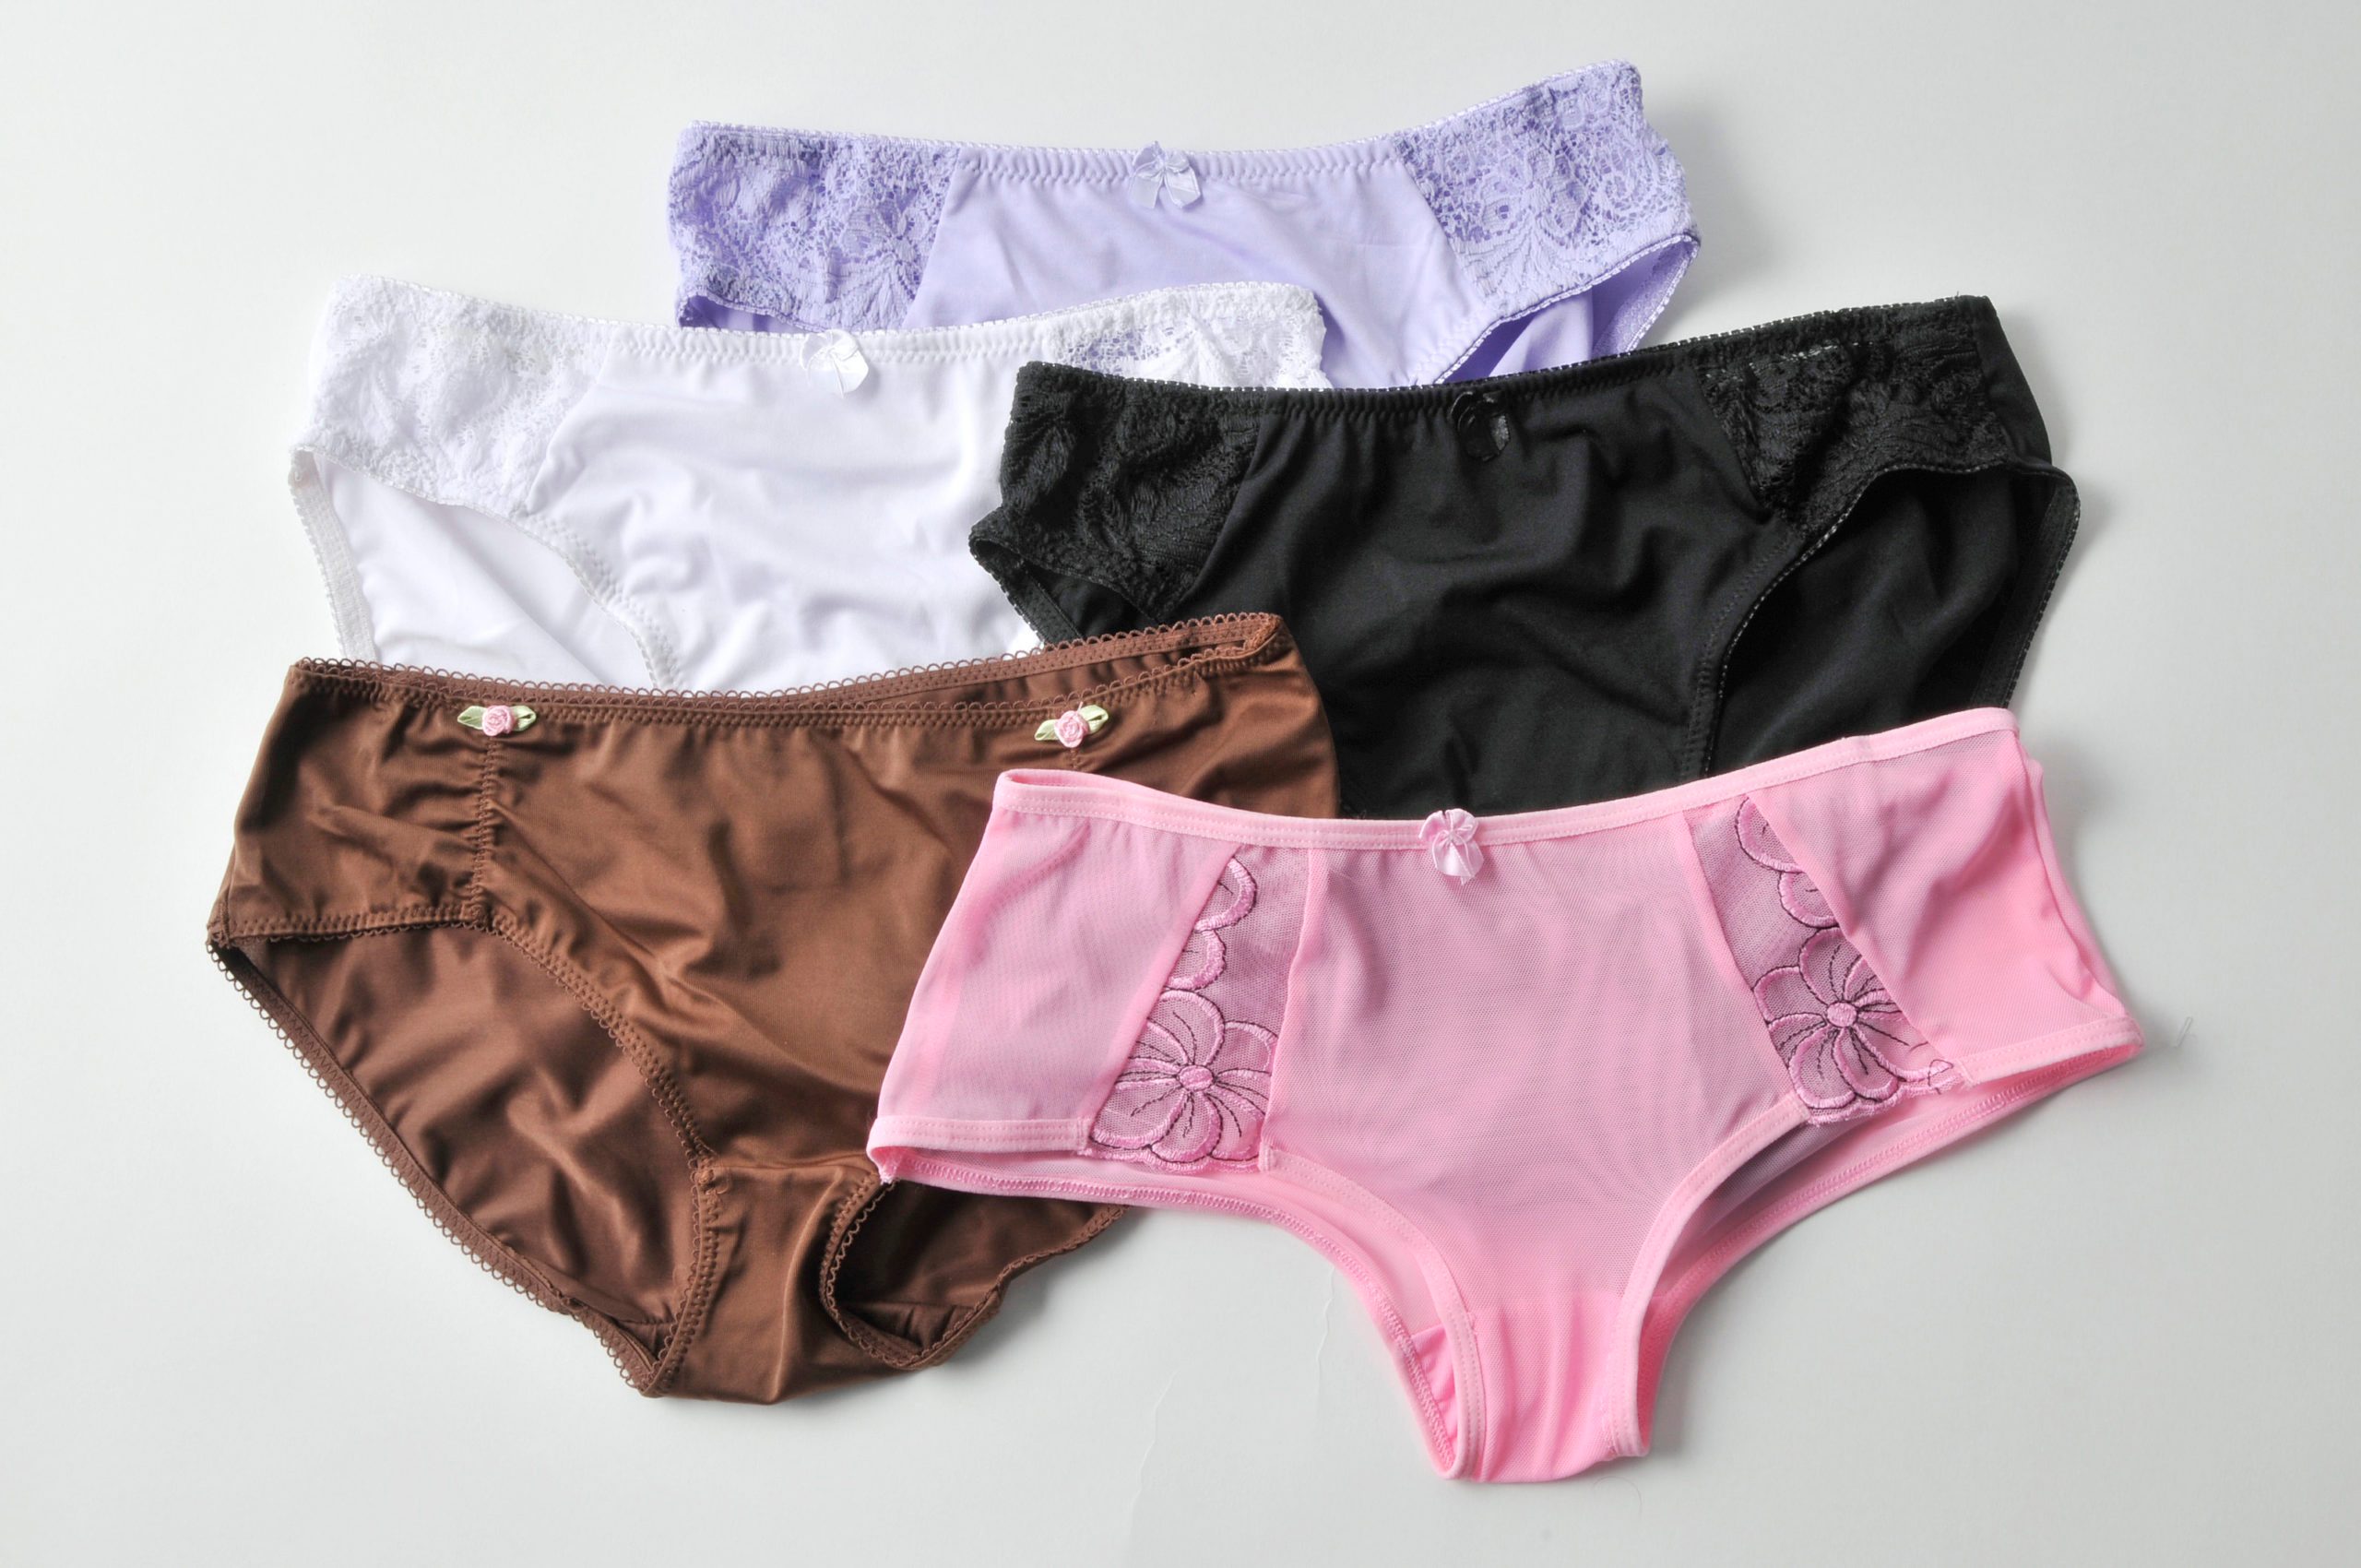 Buy Used Panties